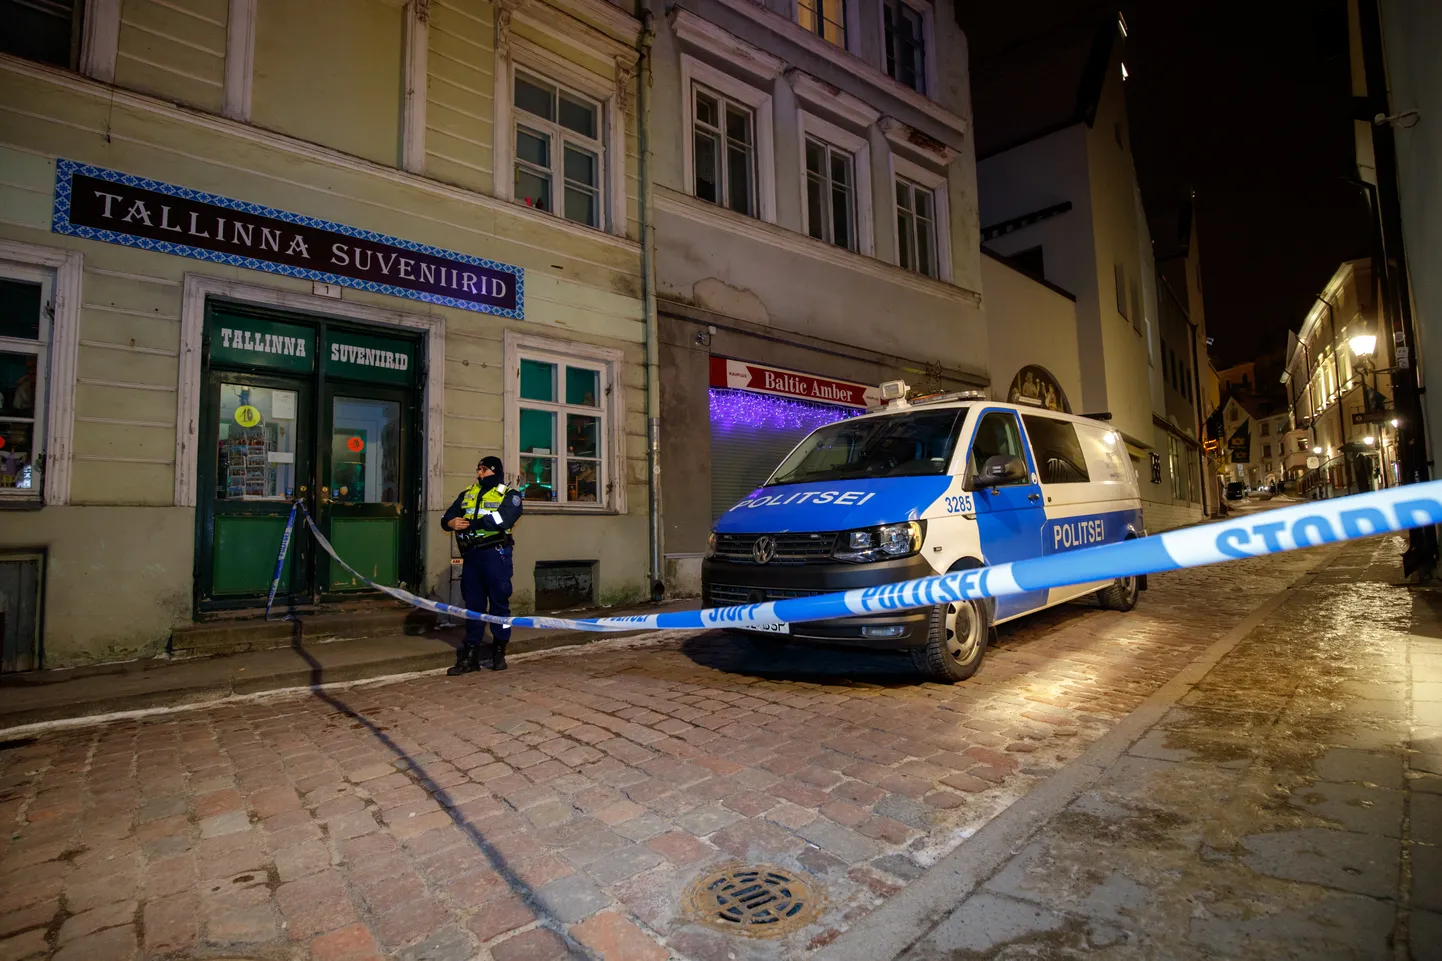 В феврале прошлого года в связи с задержанием Хирва и Гаммера полиция провела обыски в здании на улице Дункри в Таллинне.